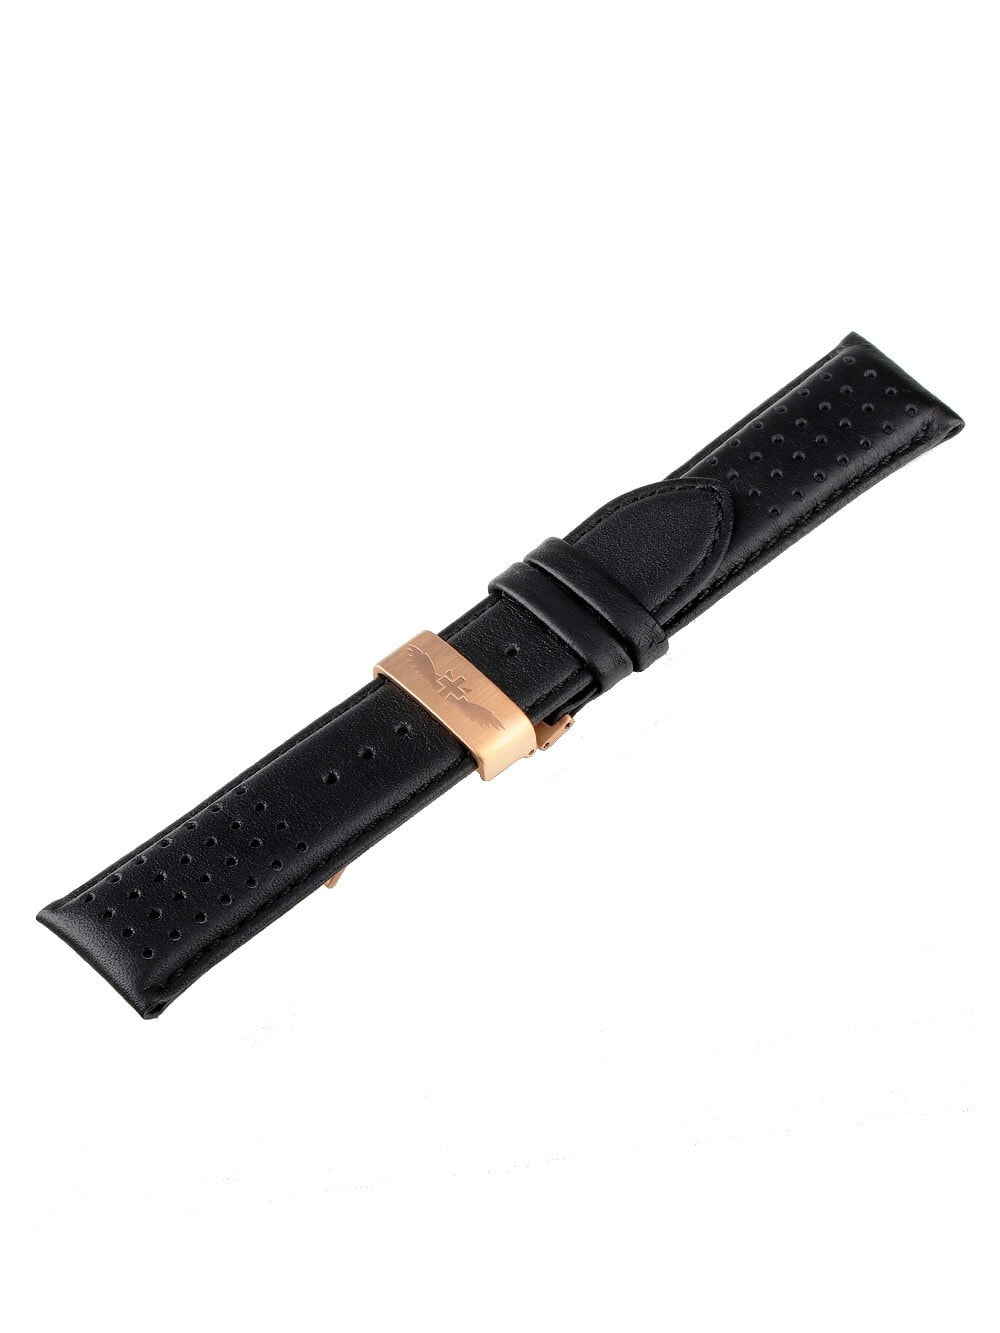 Ремешок или браслет для часов Watch strap Universal Replacement Strap [24 mm] black + rosé Ref. 23835